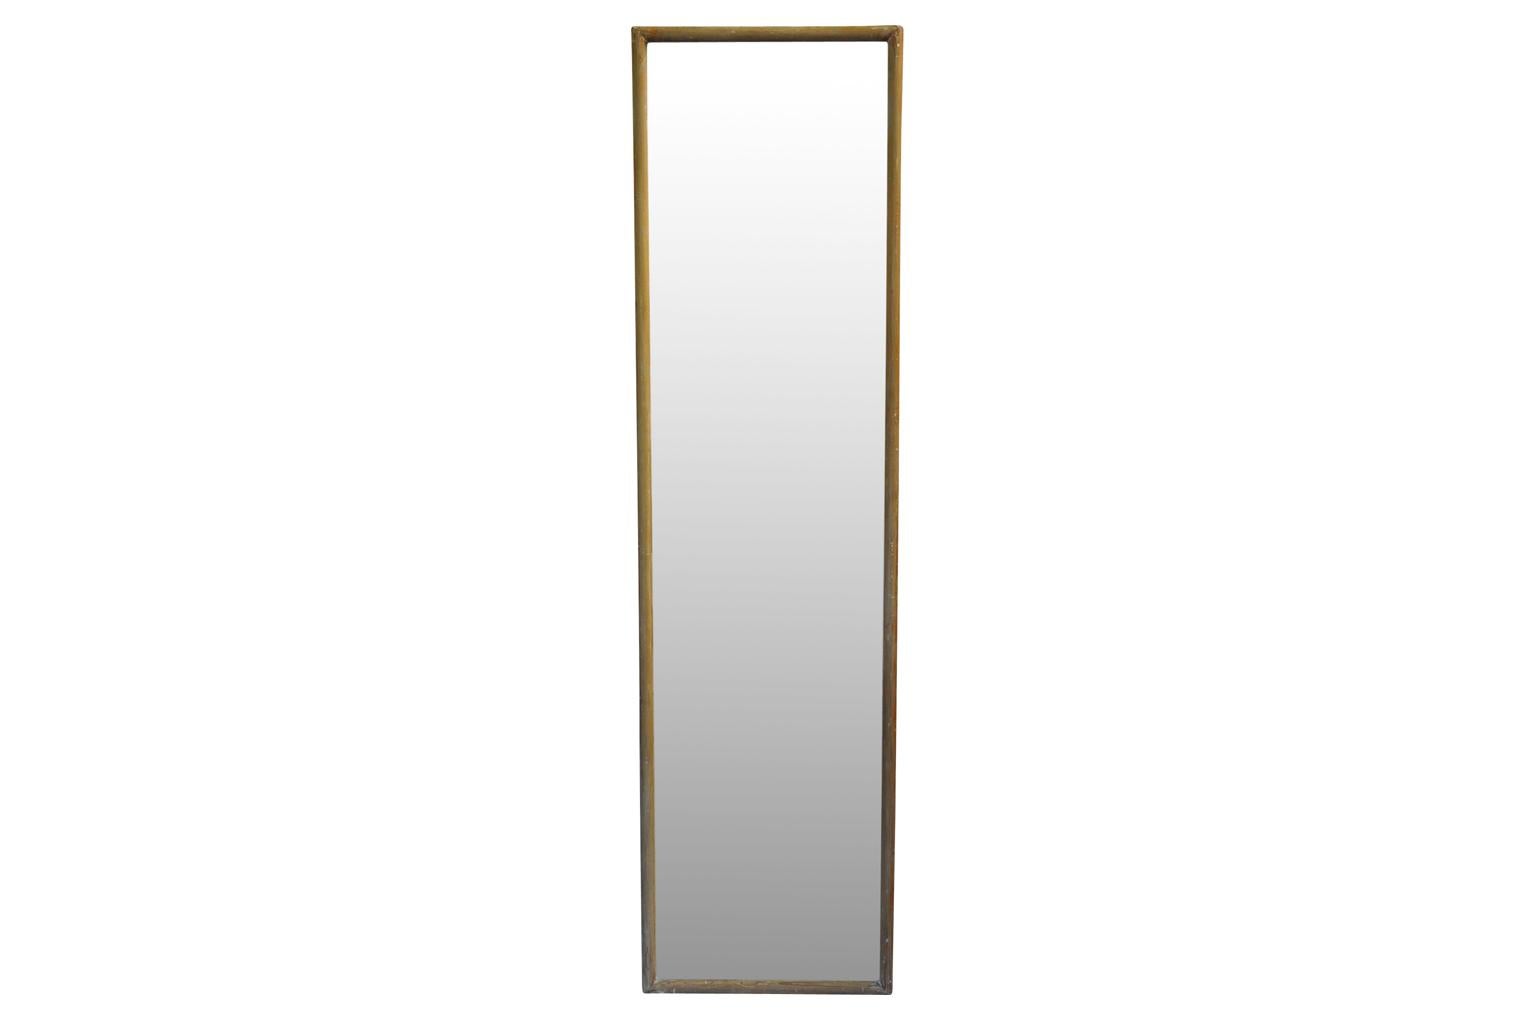 Ein fabelhaftes Paar großer französischer Spiegel aus dem 19. Jahrhundert aus Südfrankreich. Wunderschön konstruiert aus Kiefer mit originalem Quecksilberglas und holzverkleideten Rückseiten. Ein Spiegel - Spiegel A - hat abgerundete Ecken und misst